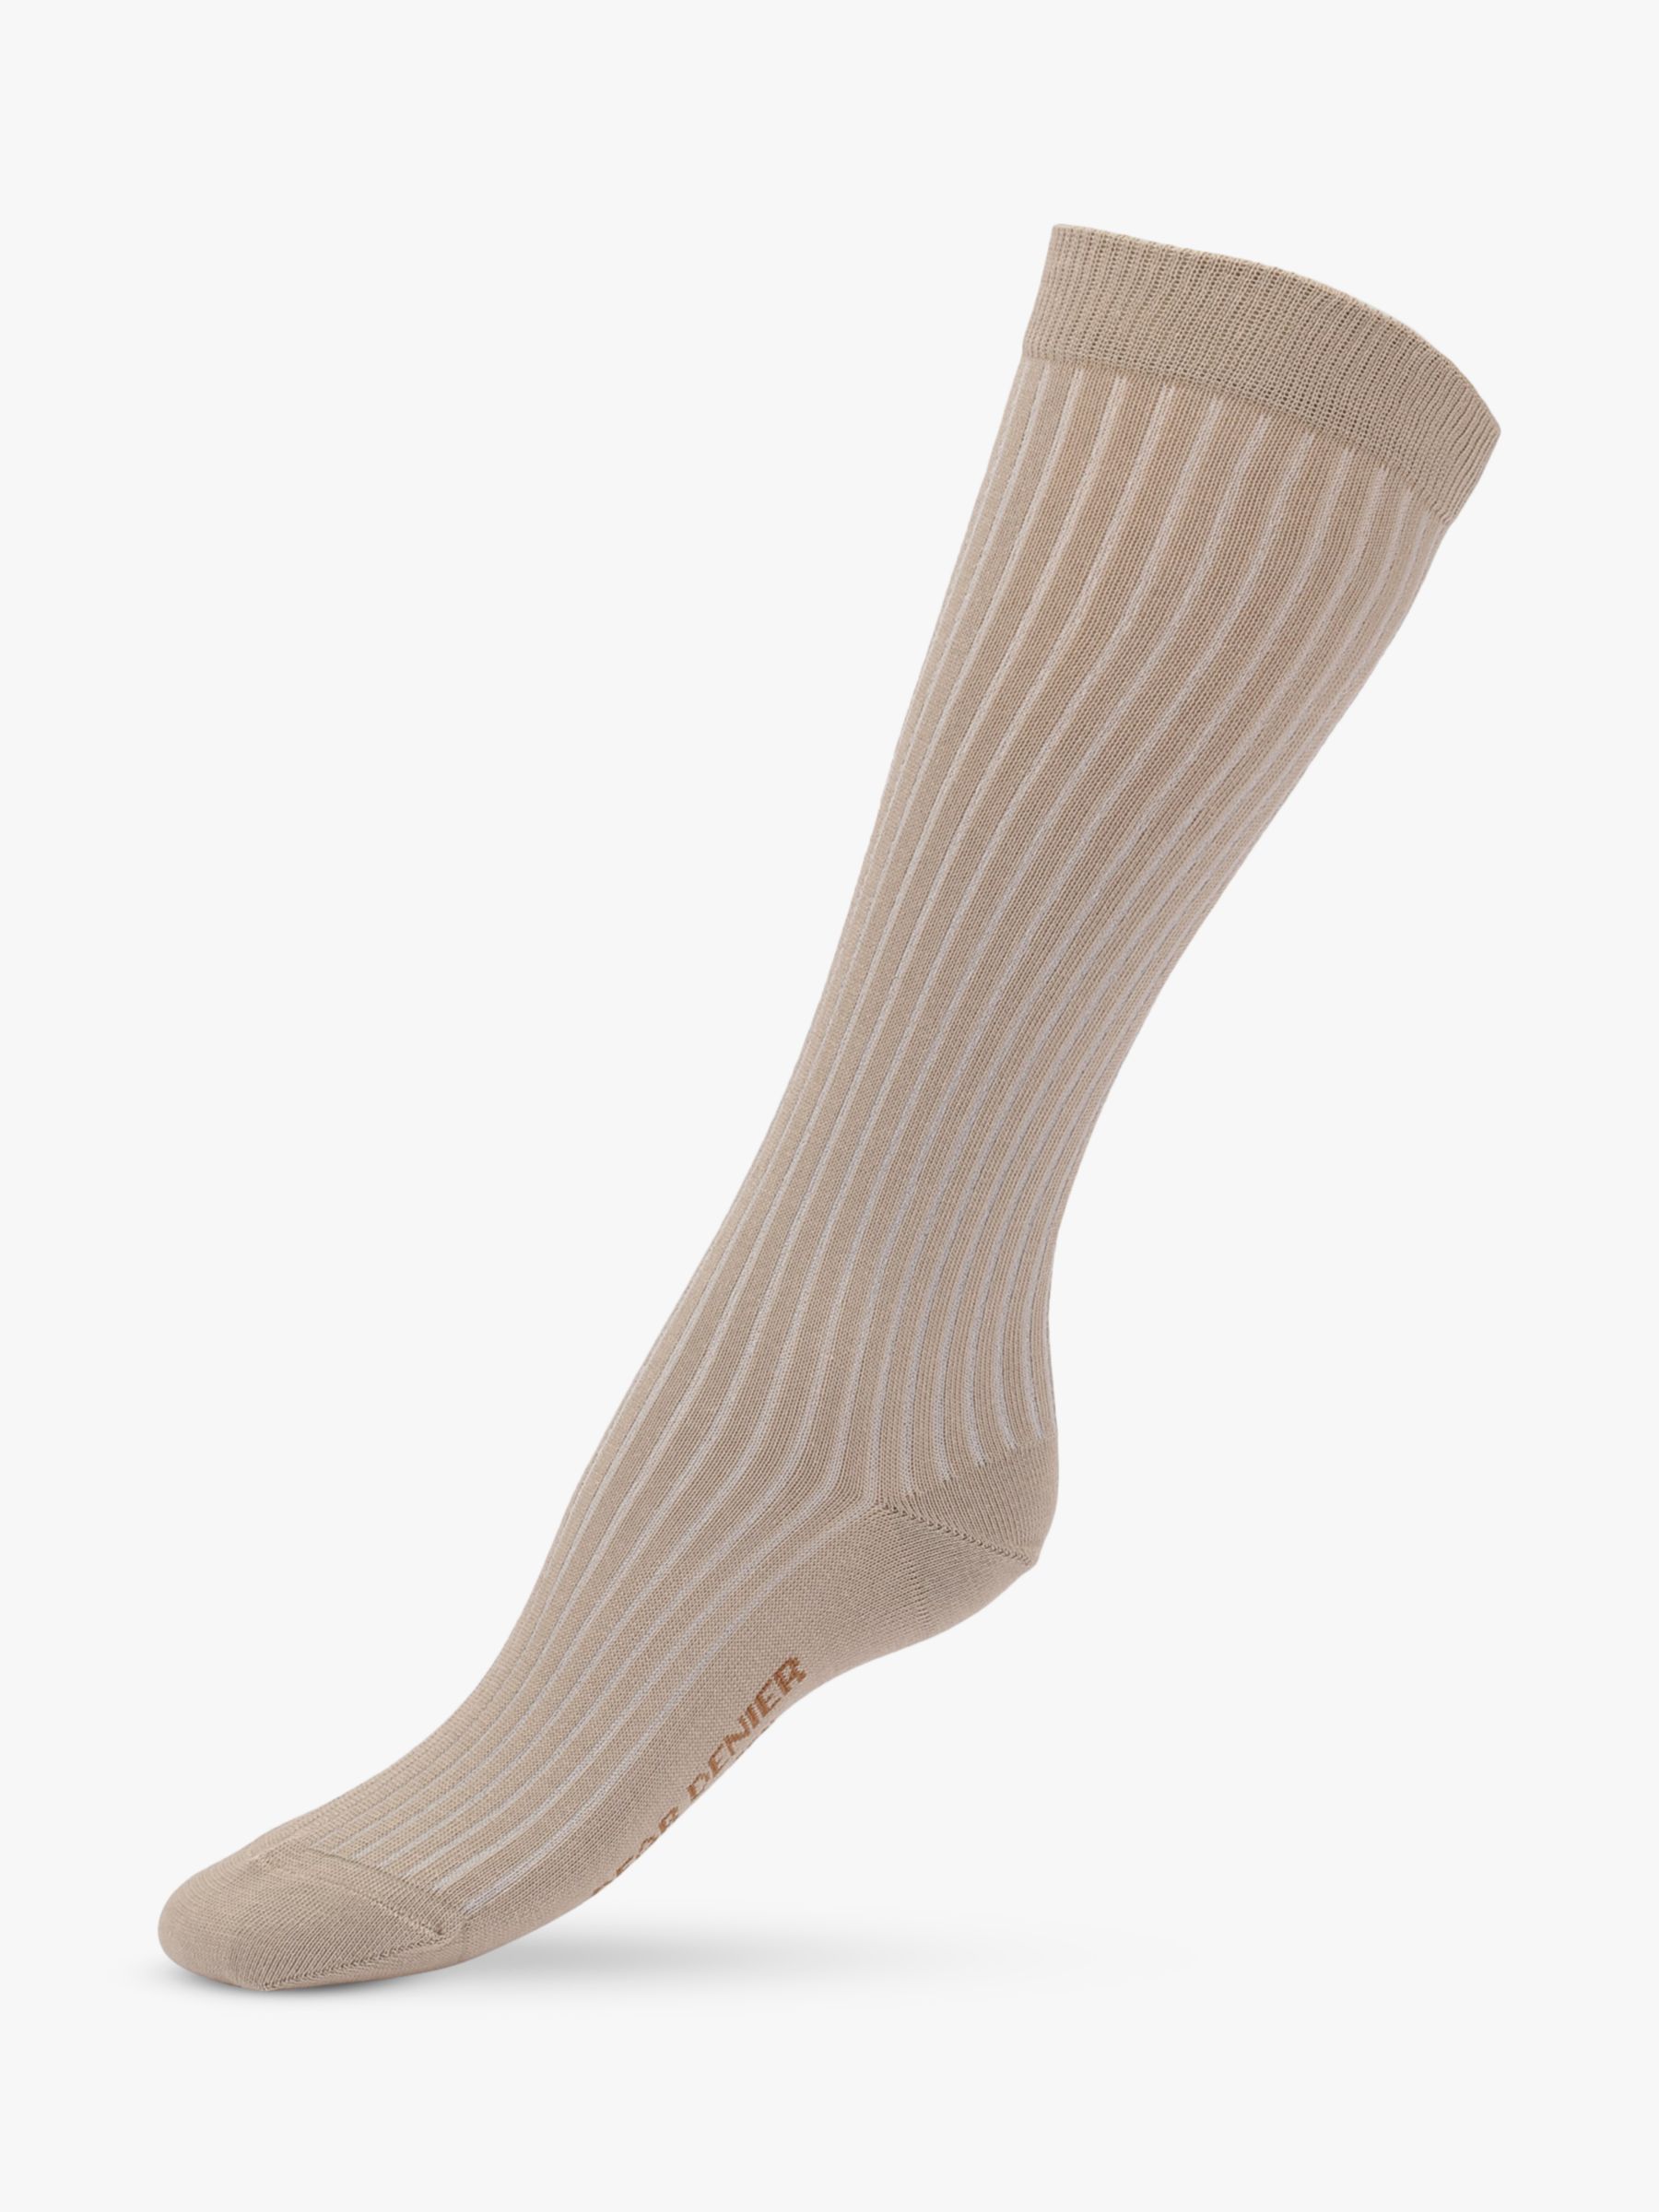 Dear Denier Matilde Knee High Ribbed Socks, Taupe, 3-5.5